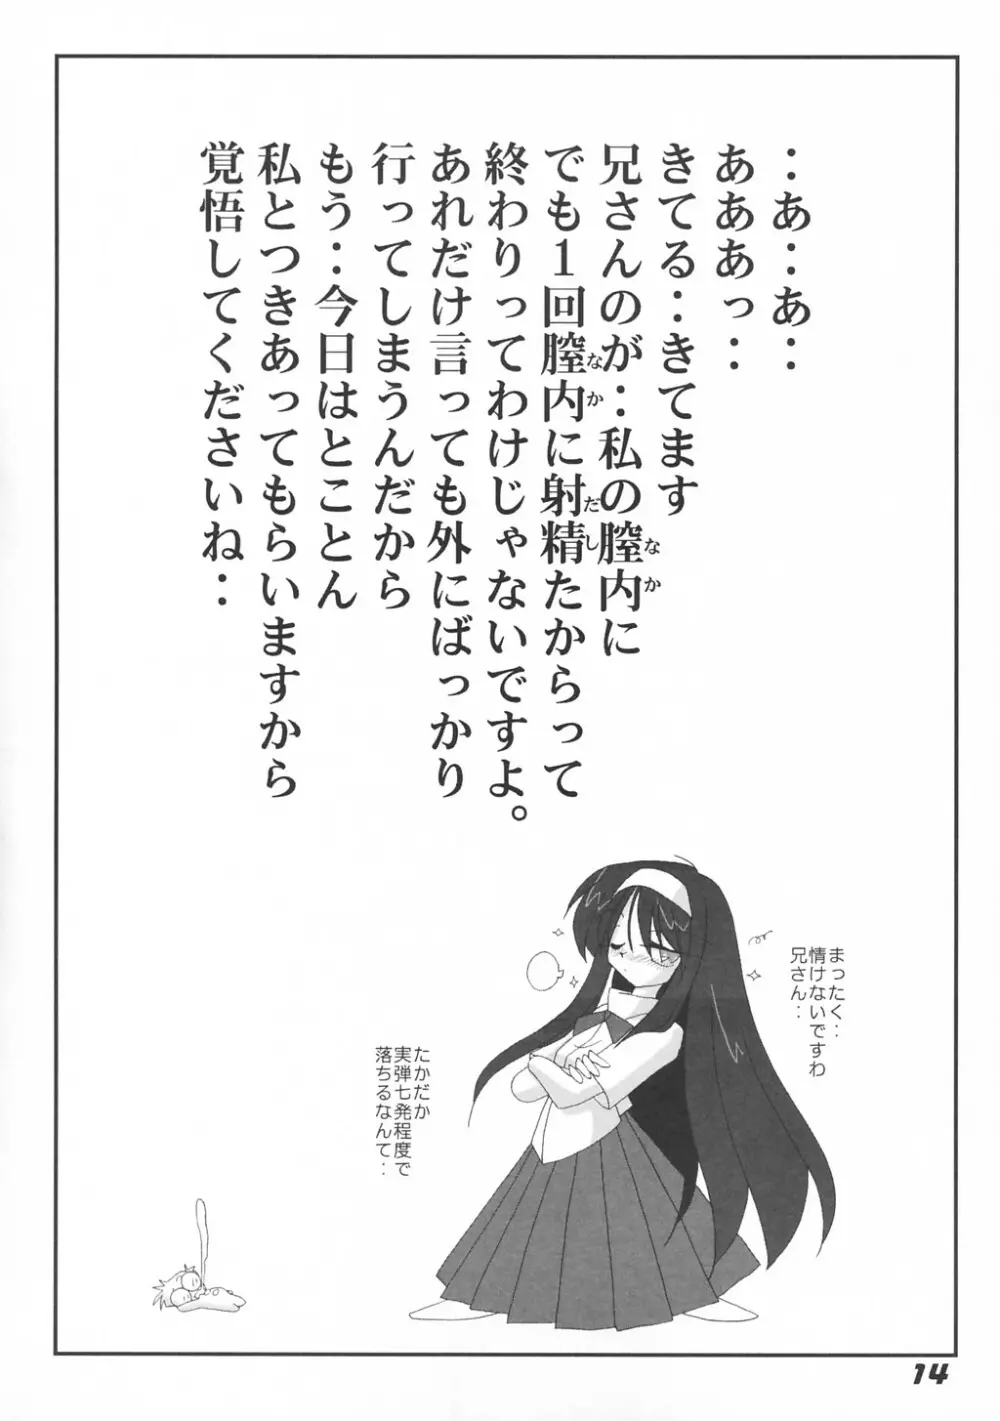 [喜栄座cmp] N+ [N-Plus] #7 (月姫) 16ページ